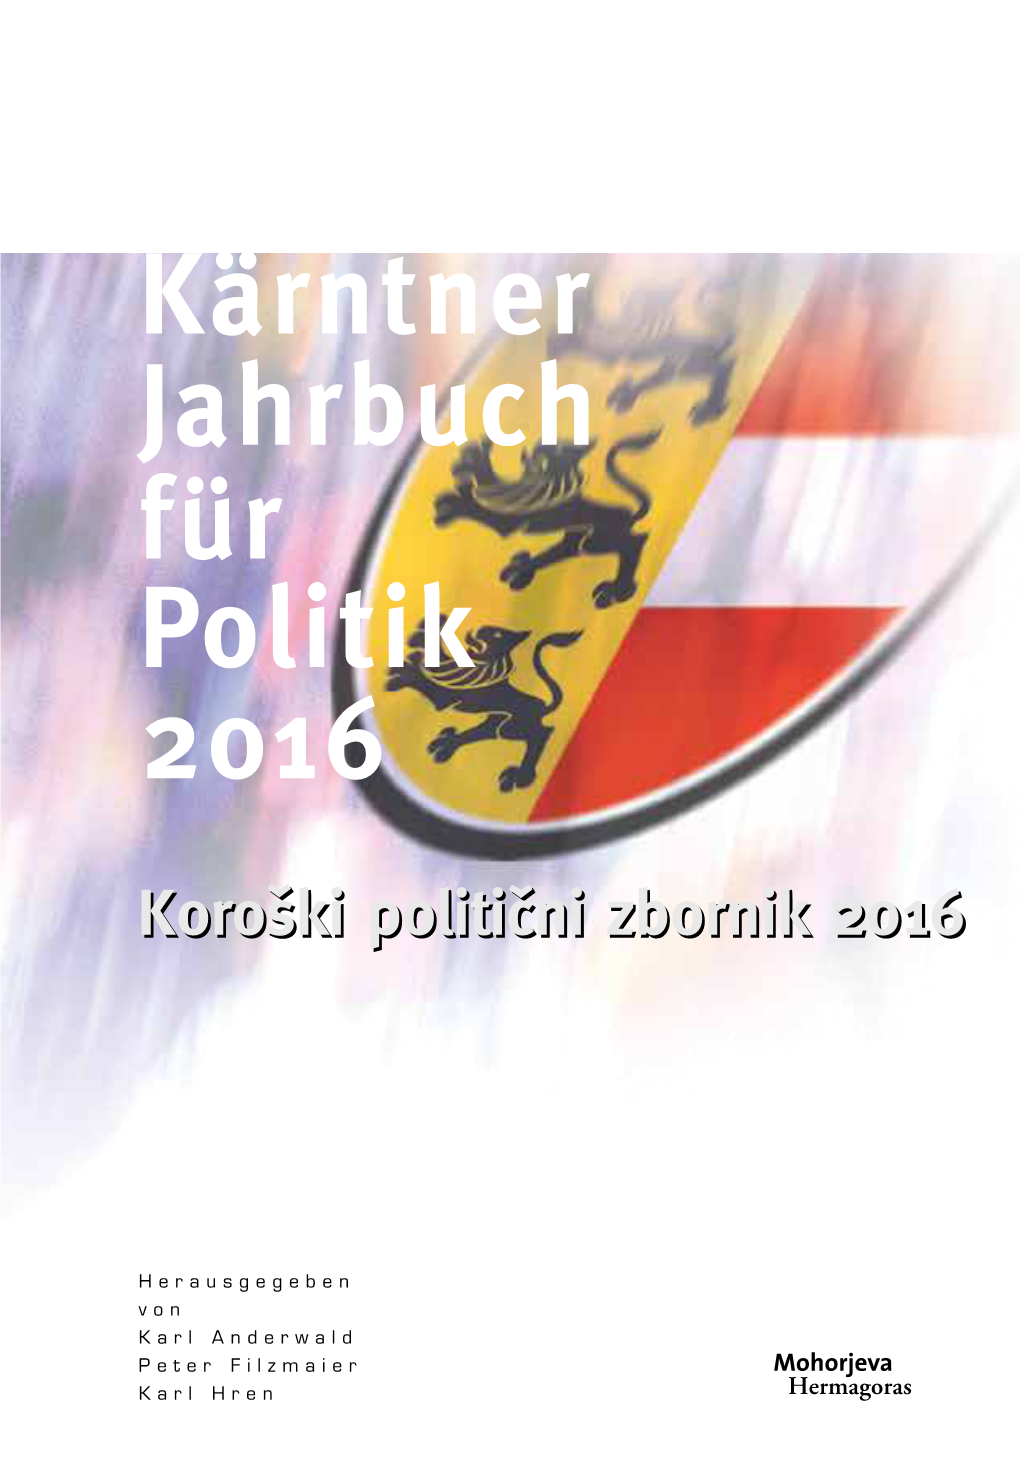 Kärntner Jahrbuch Für Politik 2016“ Spiegelt Daher Die Ereignisse Eines Bewegten Jahres in Kärnten Wider